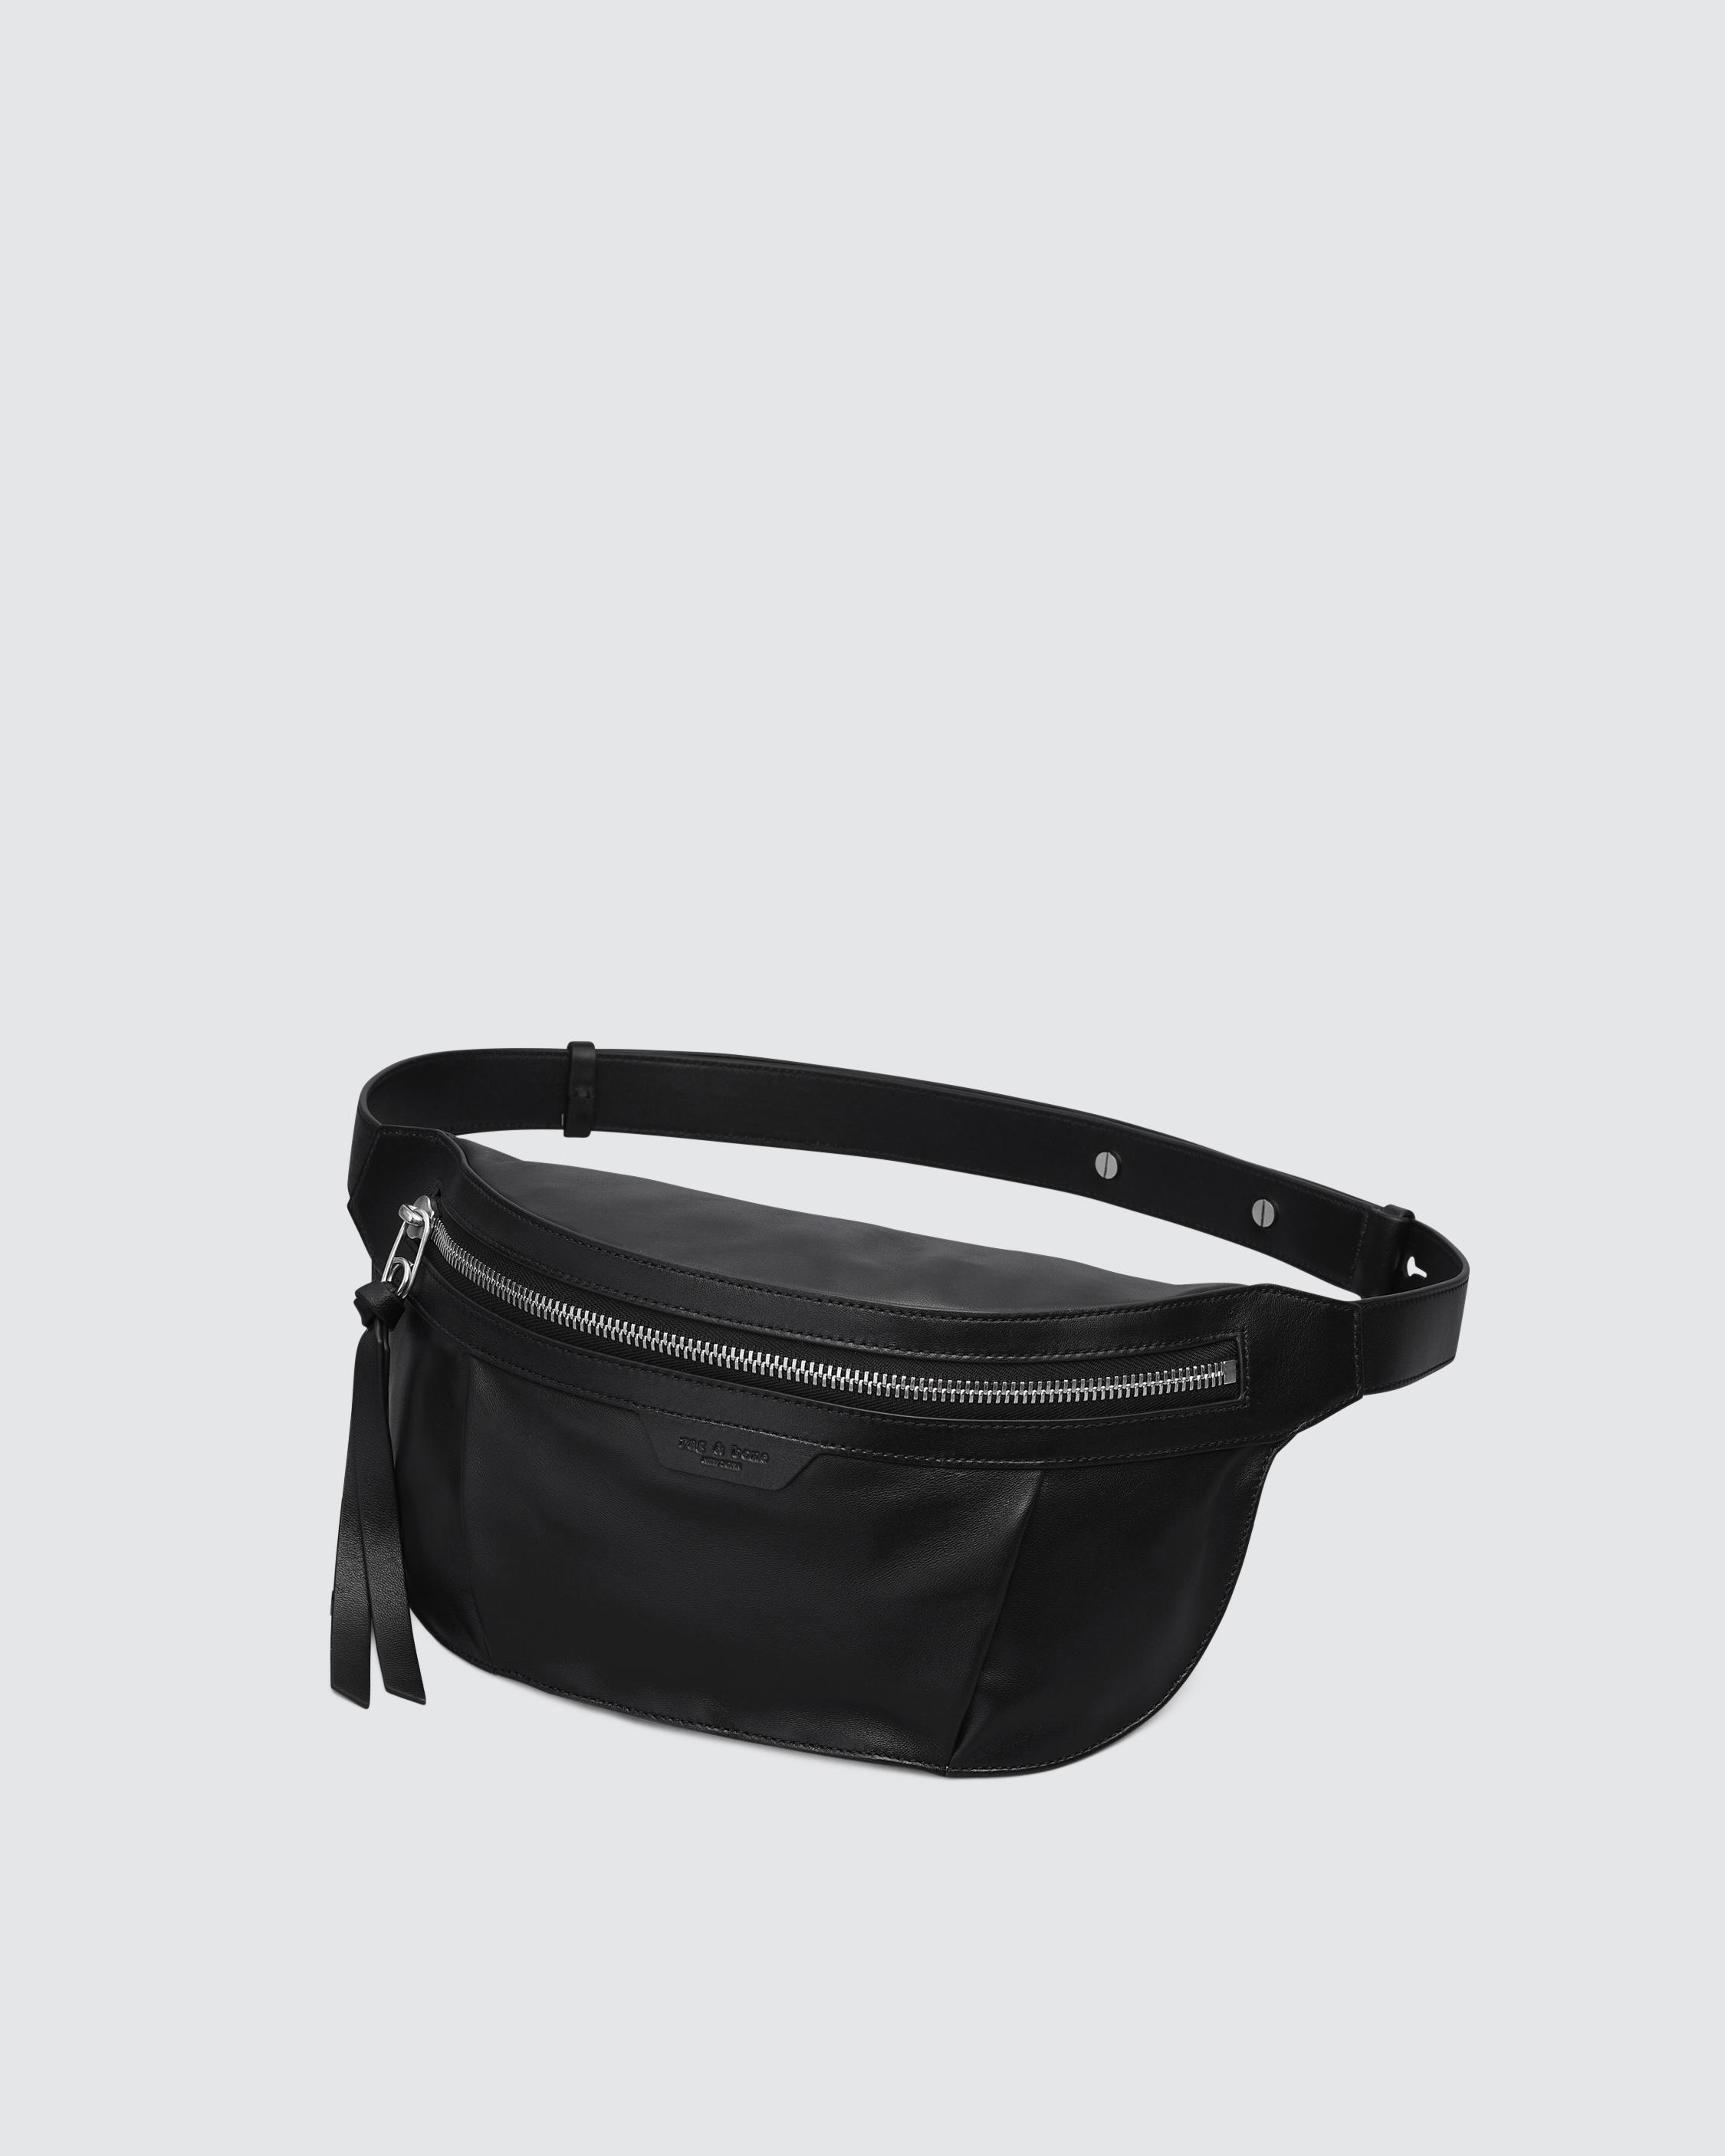 Leather Waist Bag